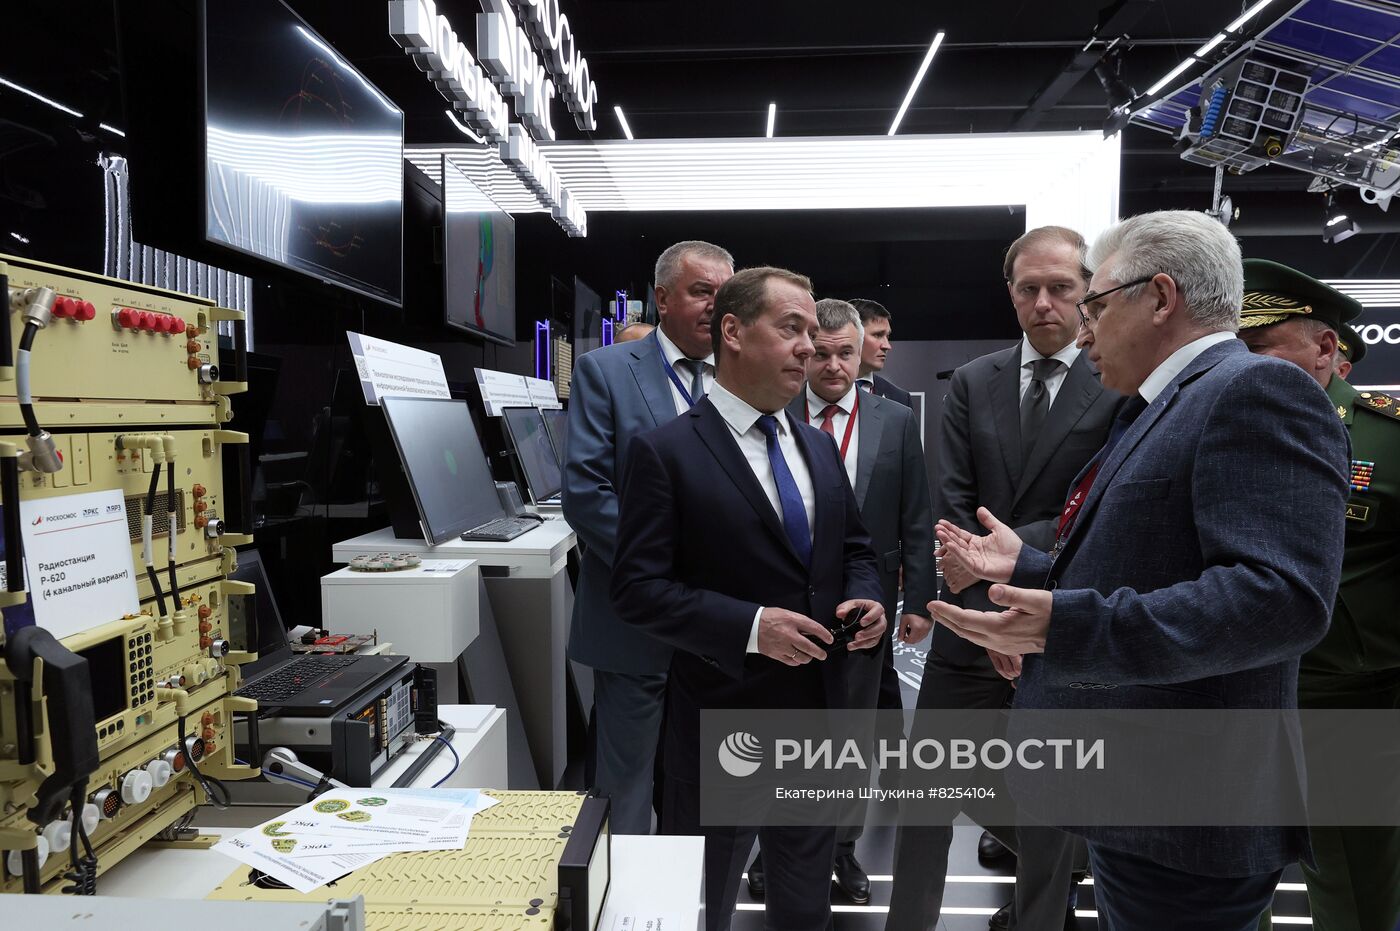 Заместитель председателя Совета безопасности РФ Д. Медведев посетил форум "Армия-2022"